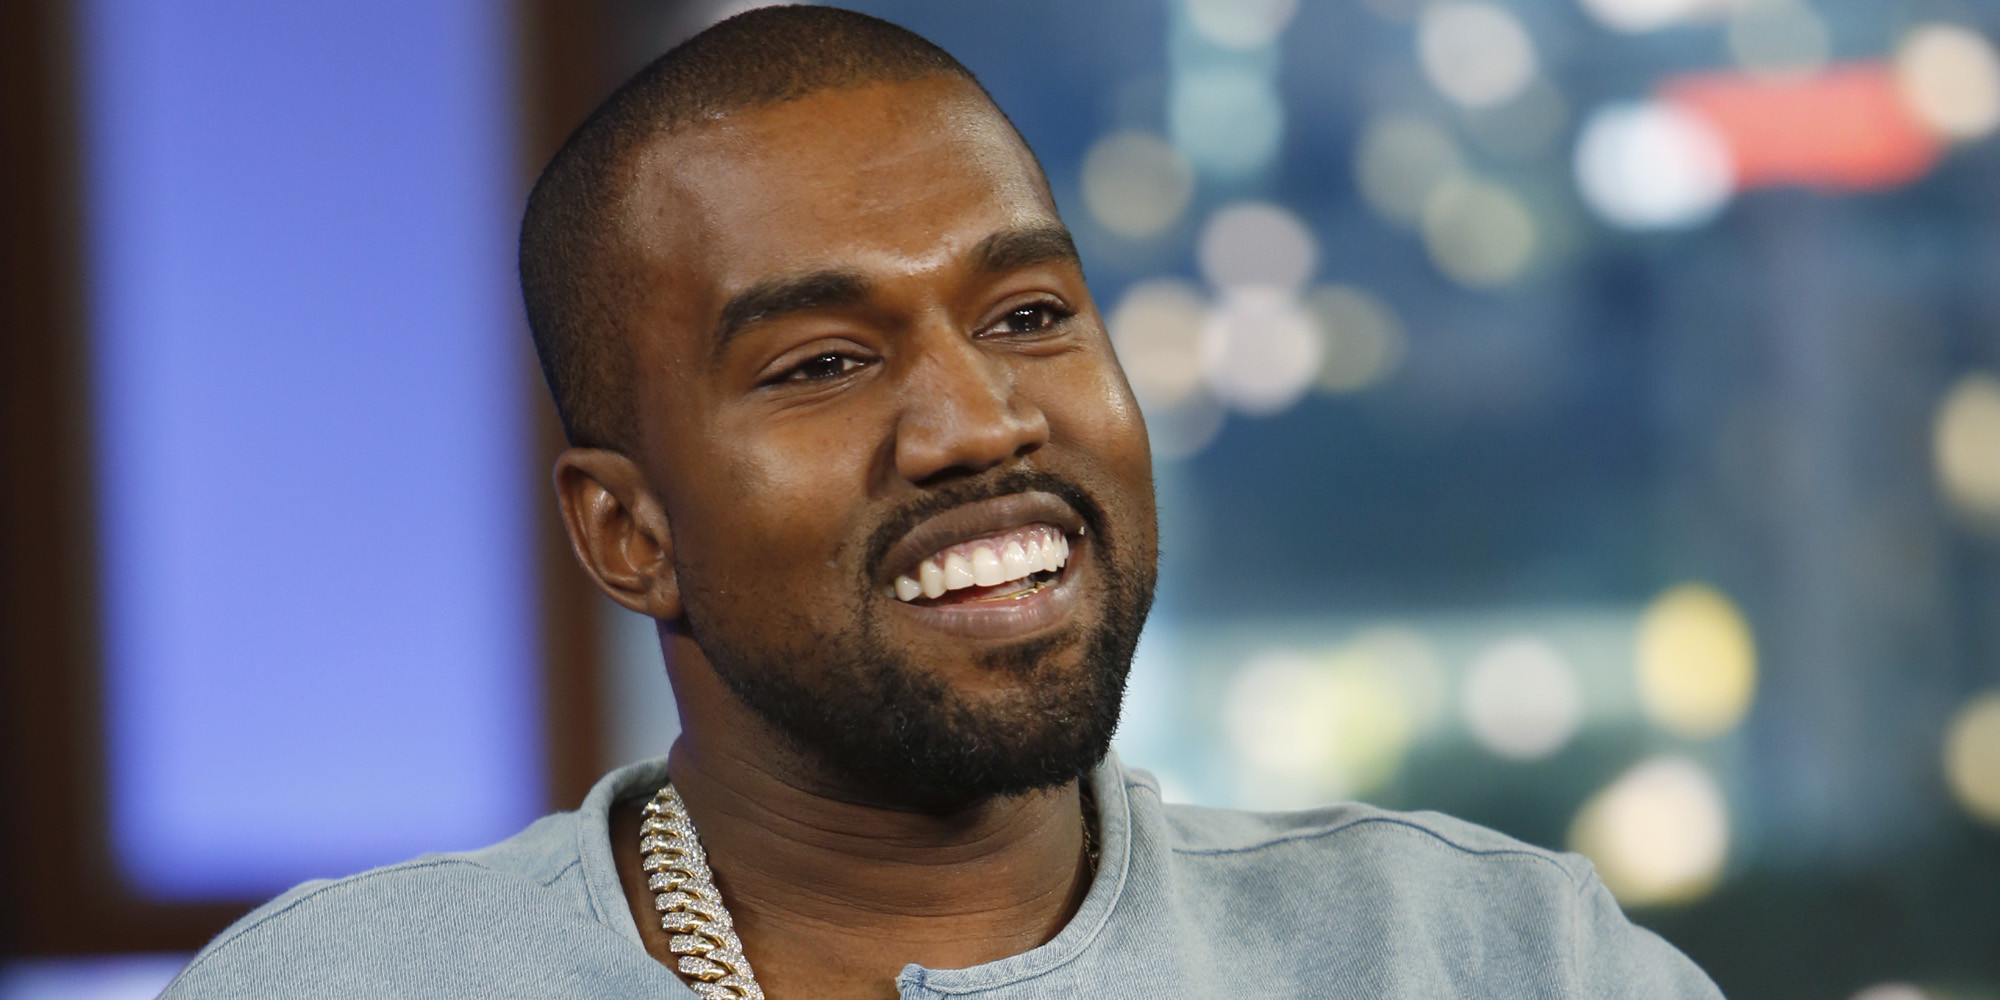 Kanye West quiere que las radios pongan más a Frank Ocean para “Hacer al mundo mejor”